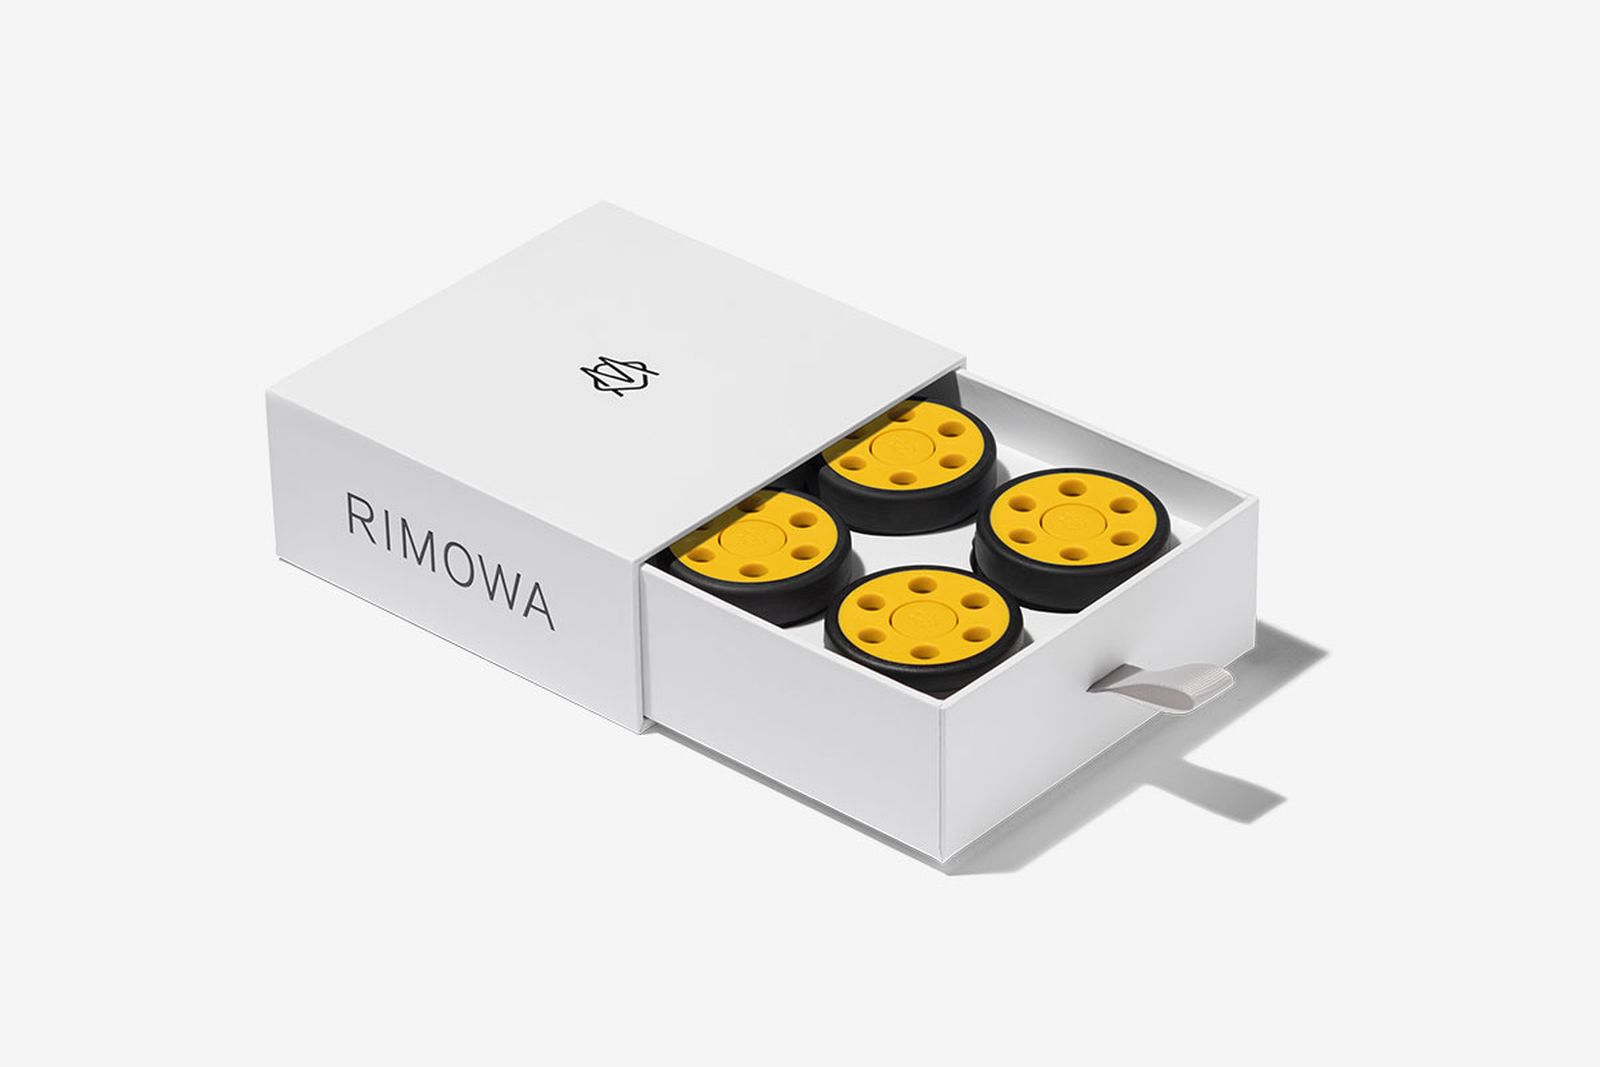 rimowa yellow wheels in a box